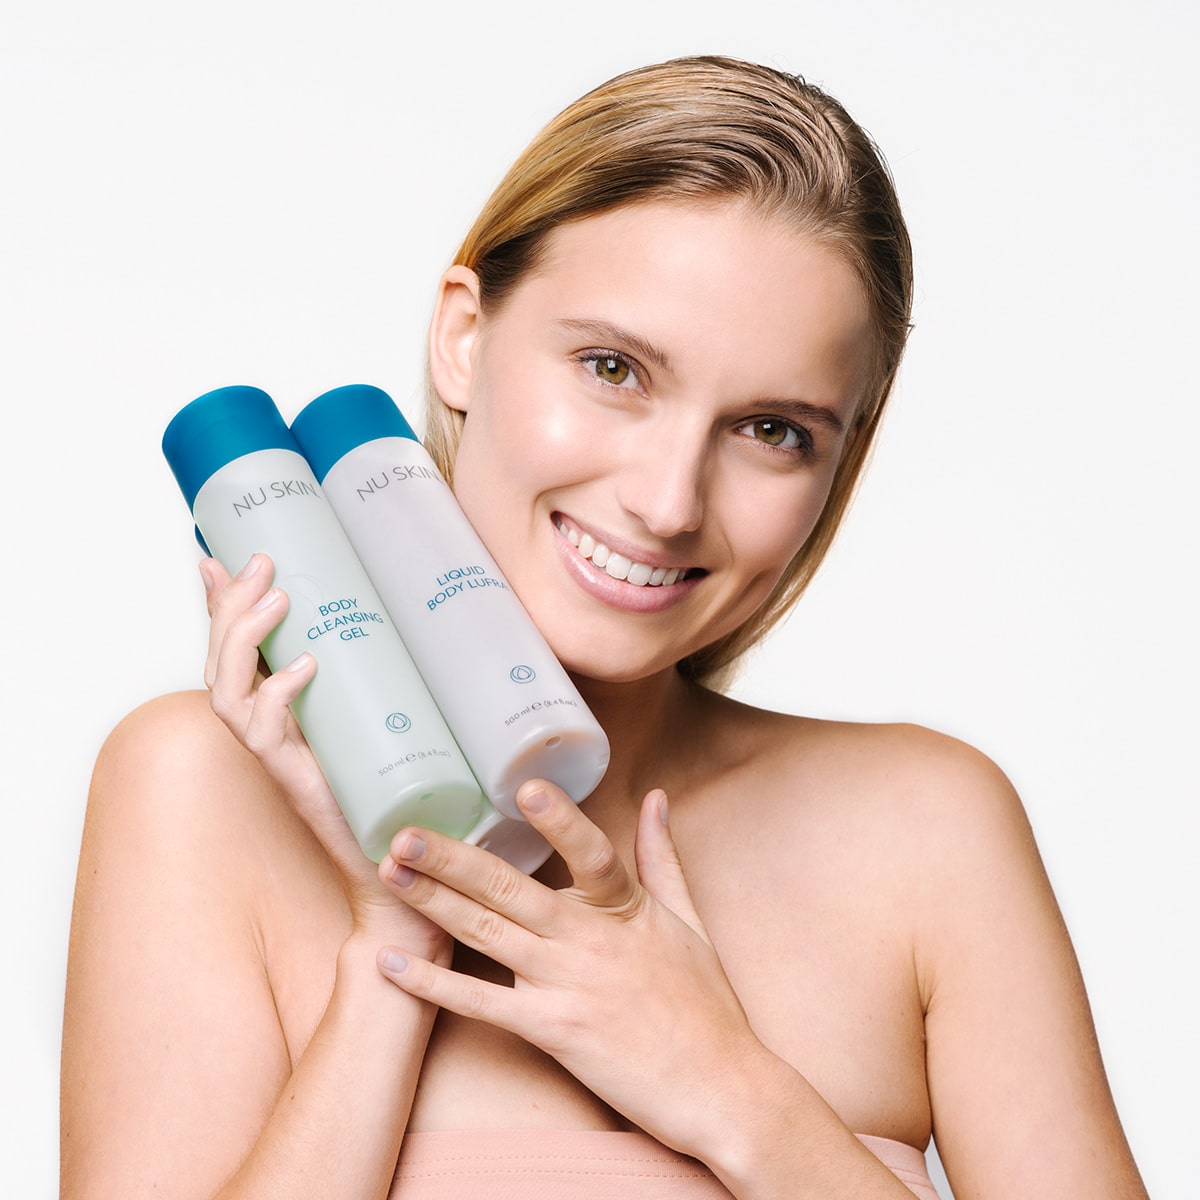 Junge Frau mit blonden frisch gewaschenen Haaren hält lächelnd Nu Skin Basic Produkte in den Händen: Body Cleansing Gel und Liquid Body Lufra.